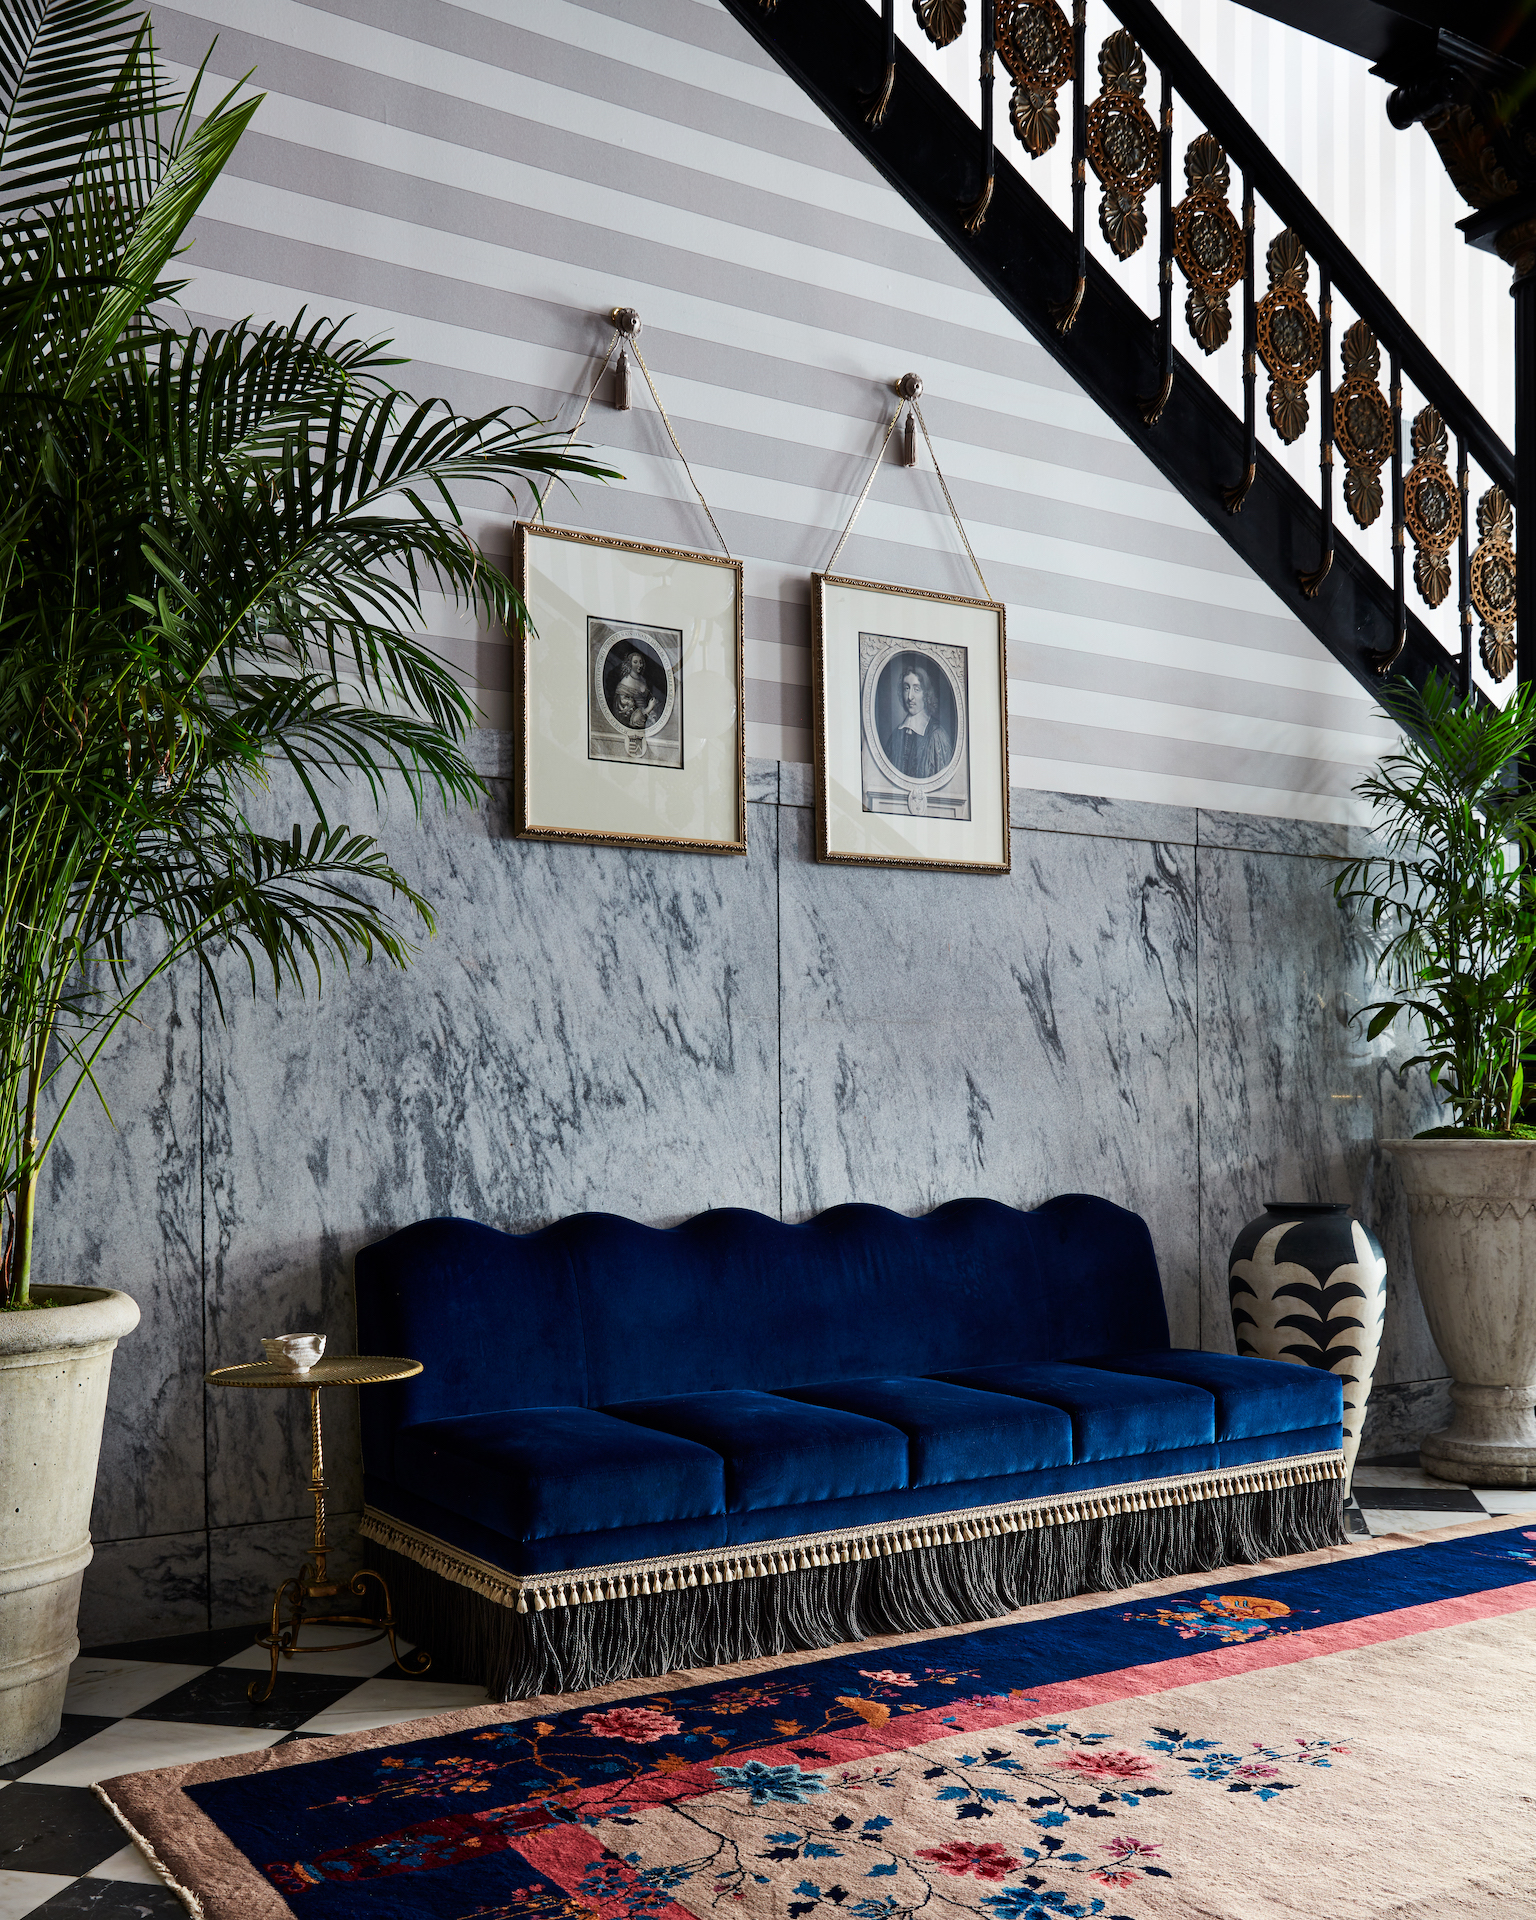 Maison de la Luz hallway with blue sofa and artwork hanging above